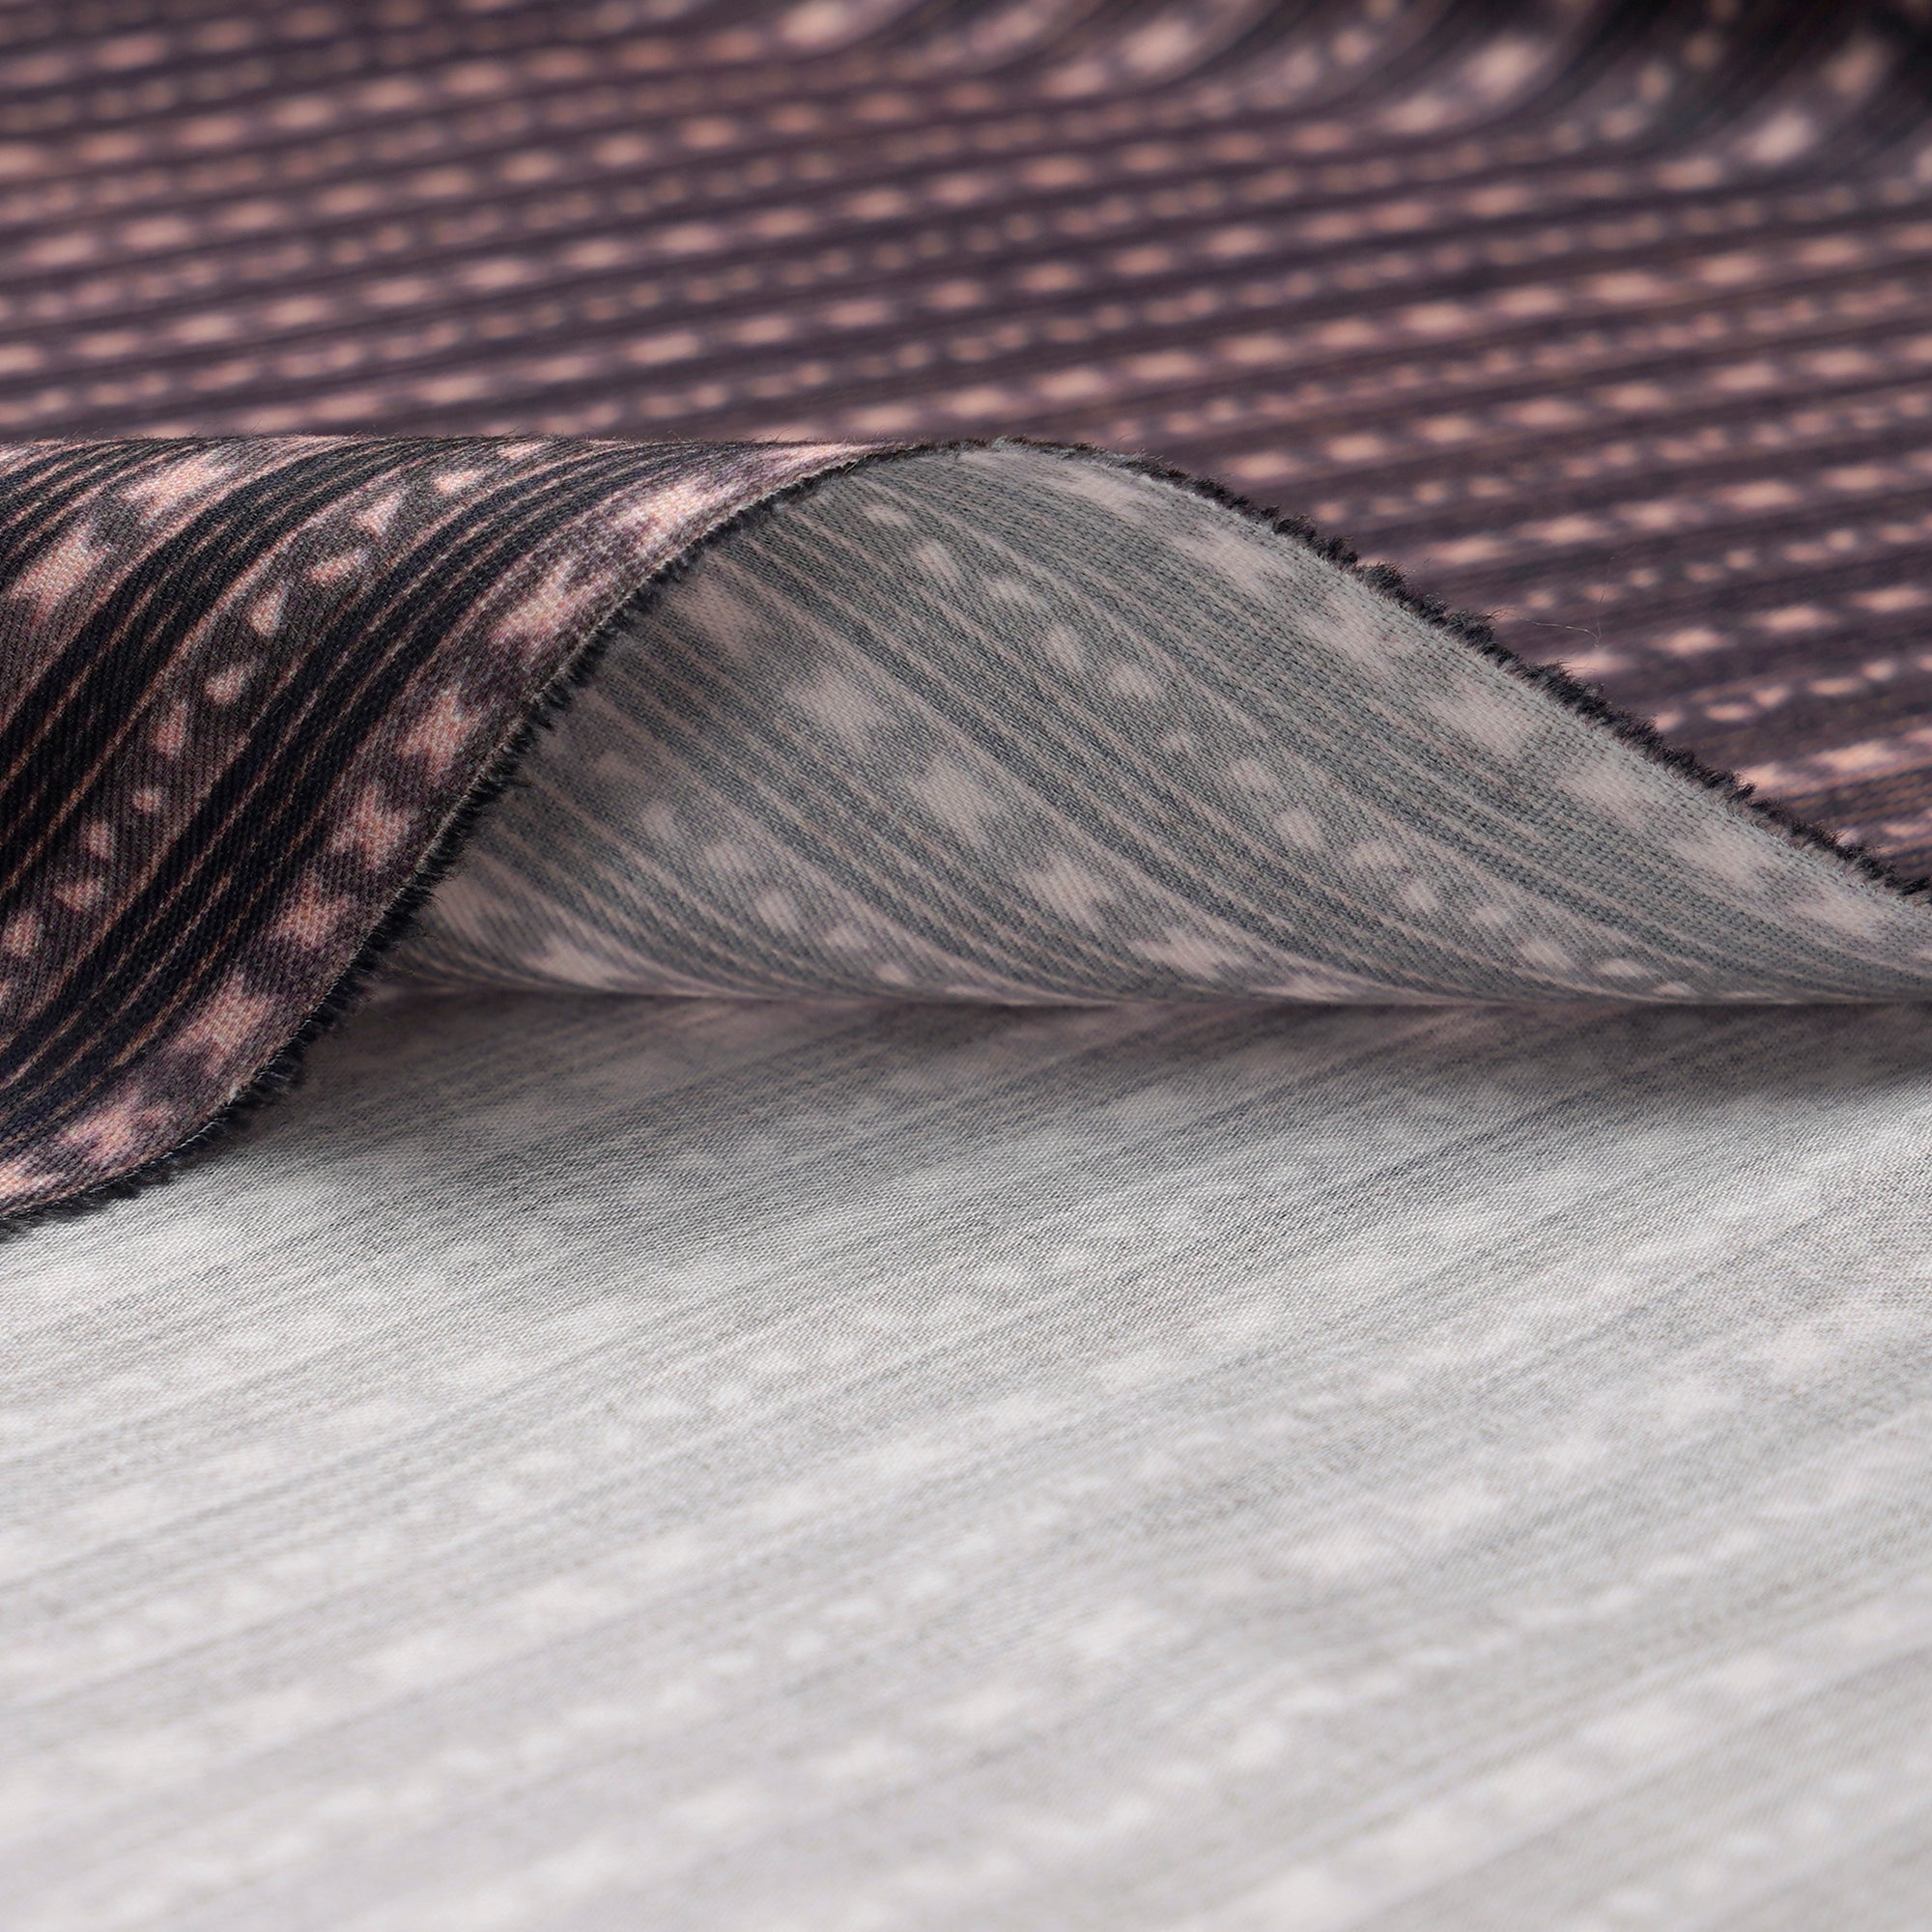 Black-Pink Stripe Pattern Digital Print Tencel Fabric